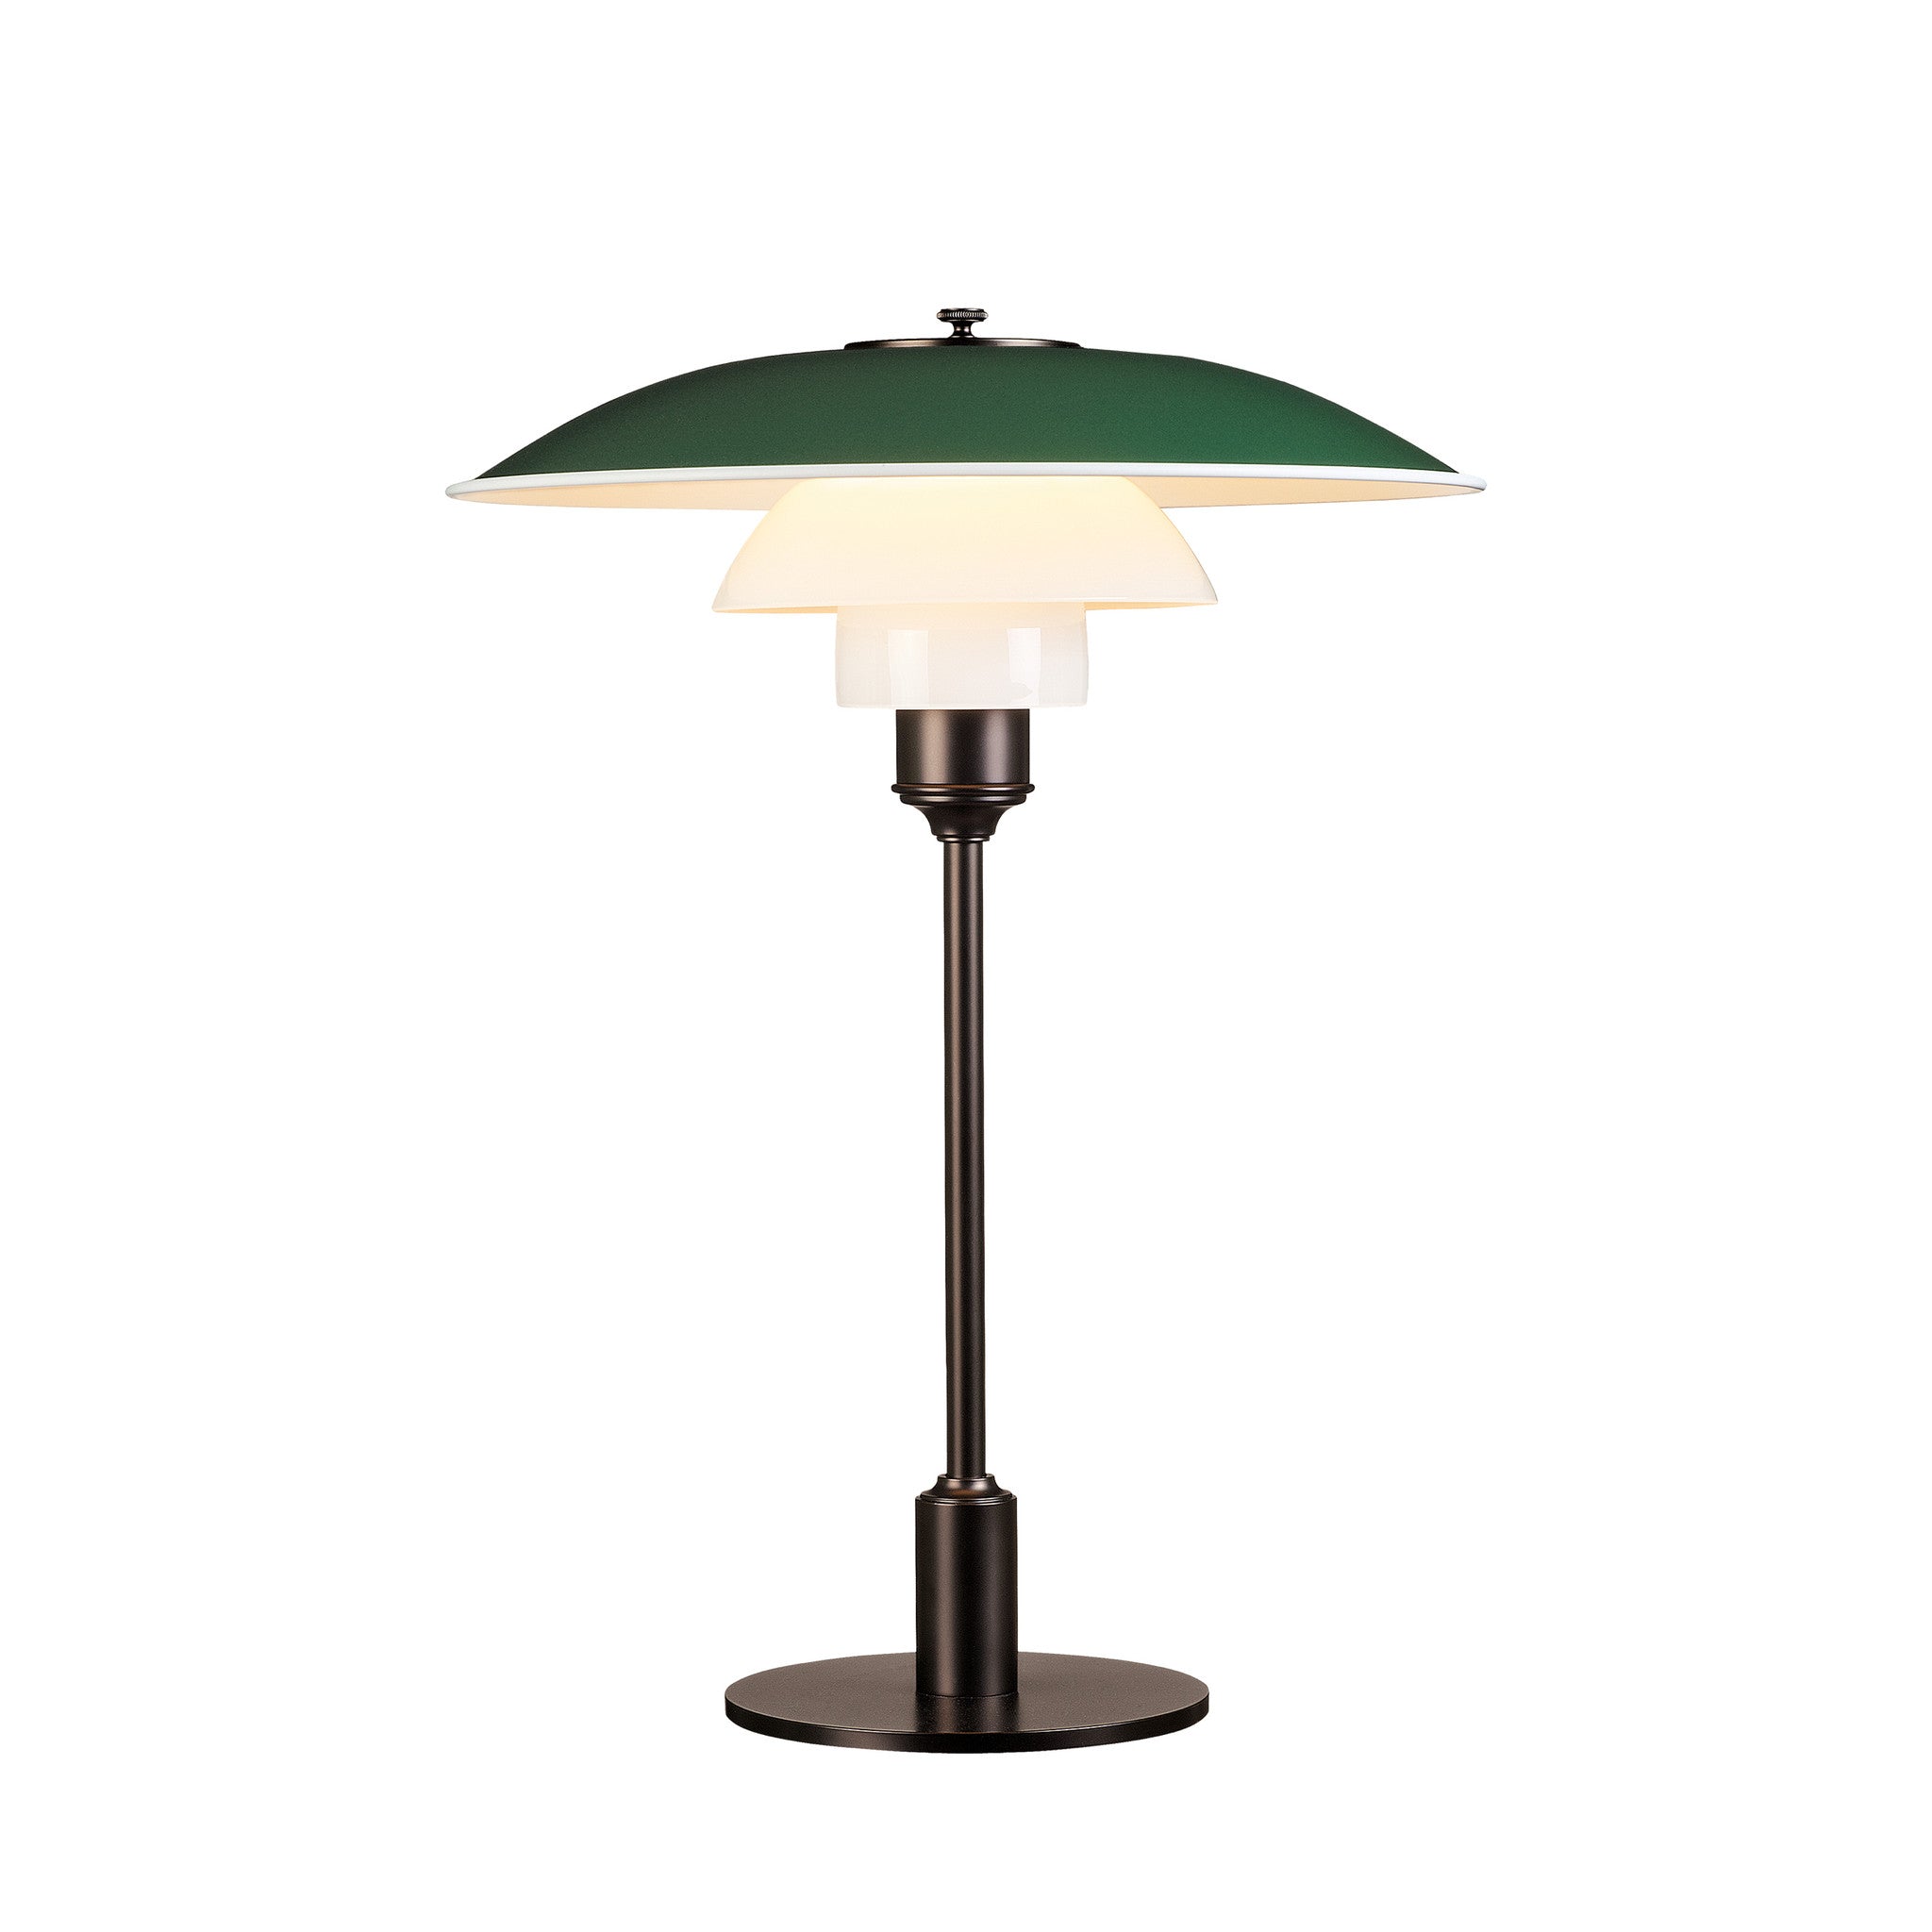 PH 3½-2½ Table Lamp by Louis Poulsen